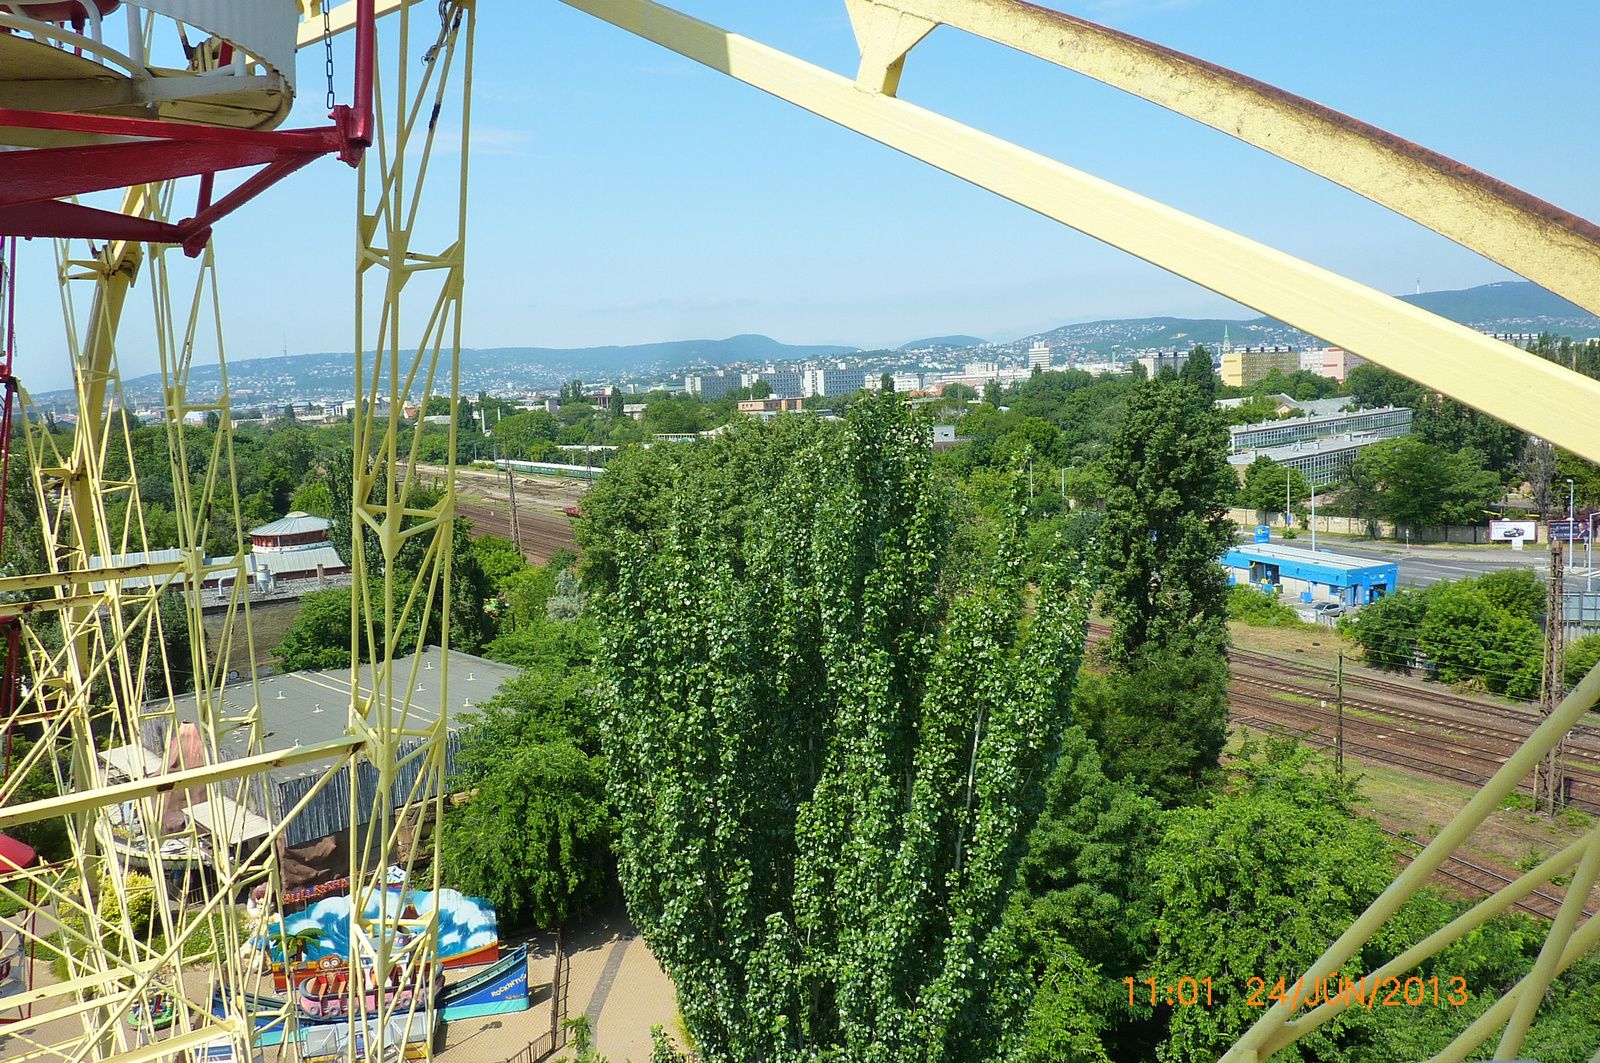 Vidámpark, 2013 (6)